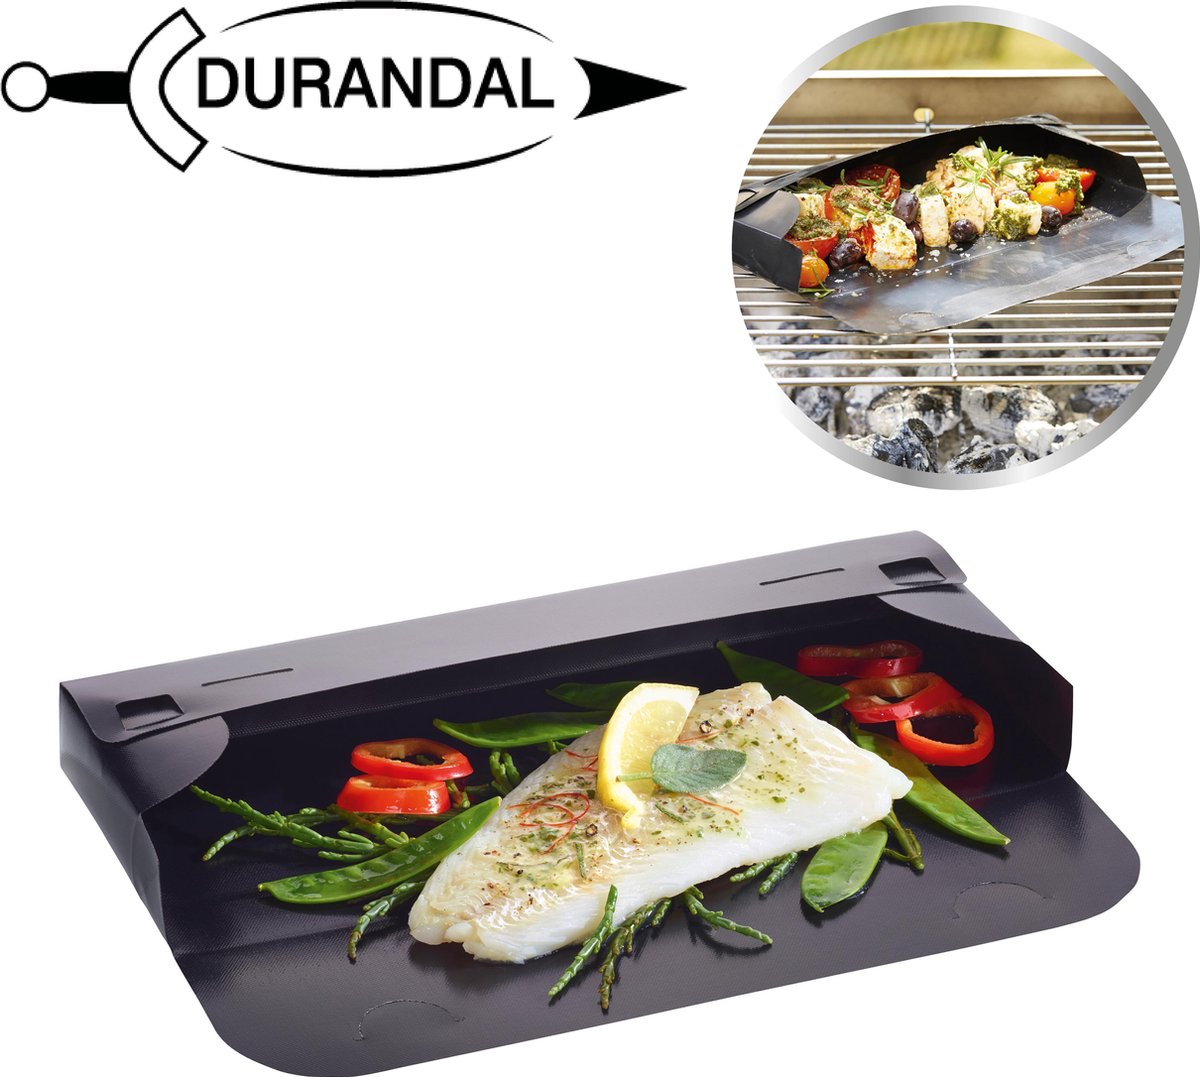 Grille de cuisson antiadhésive et réglable spécial four - Durandal